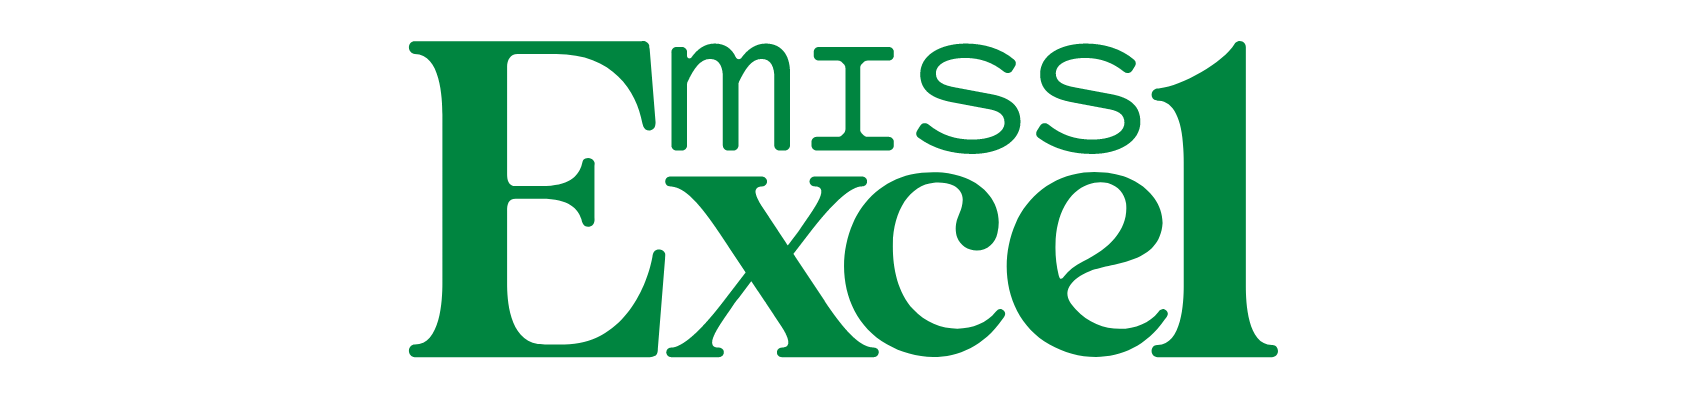 Miss Excel Logo